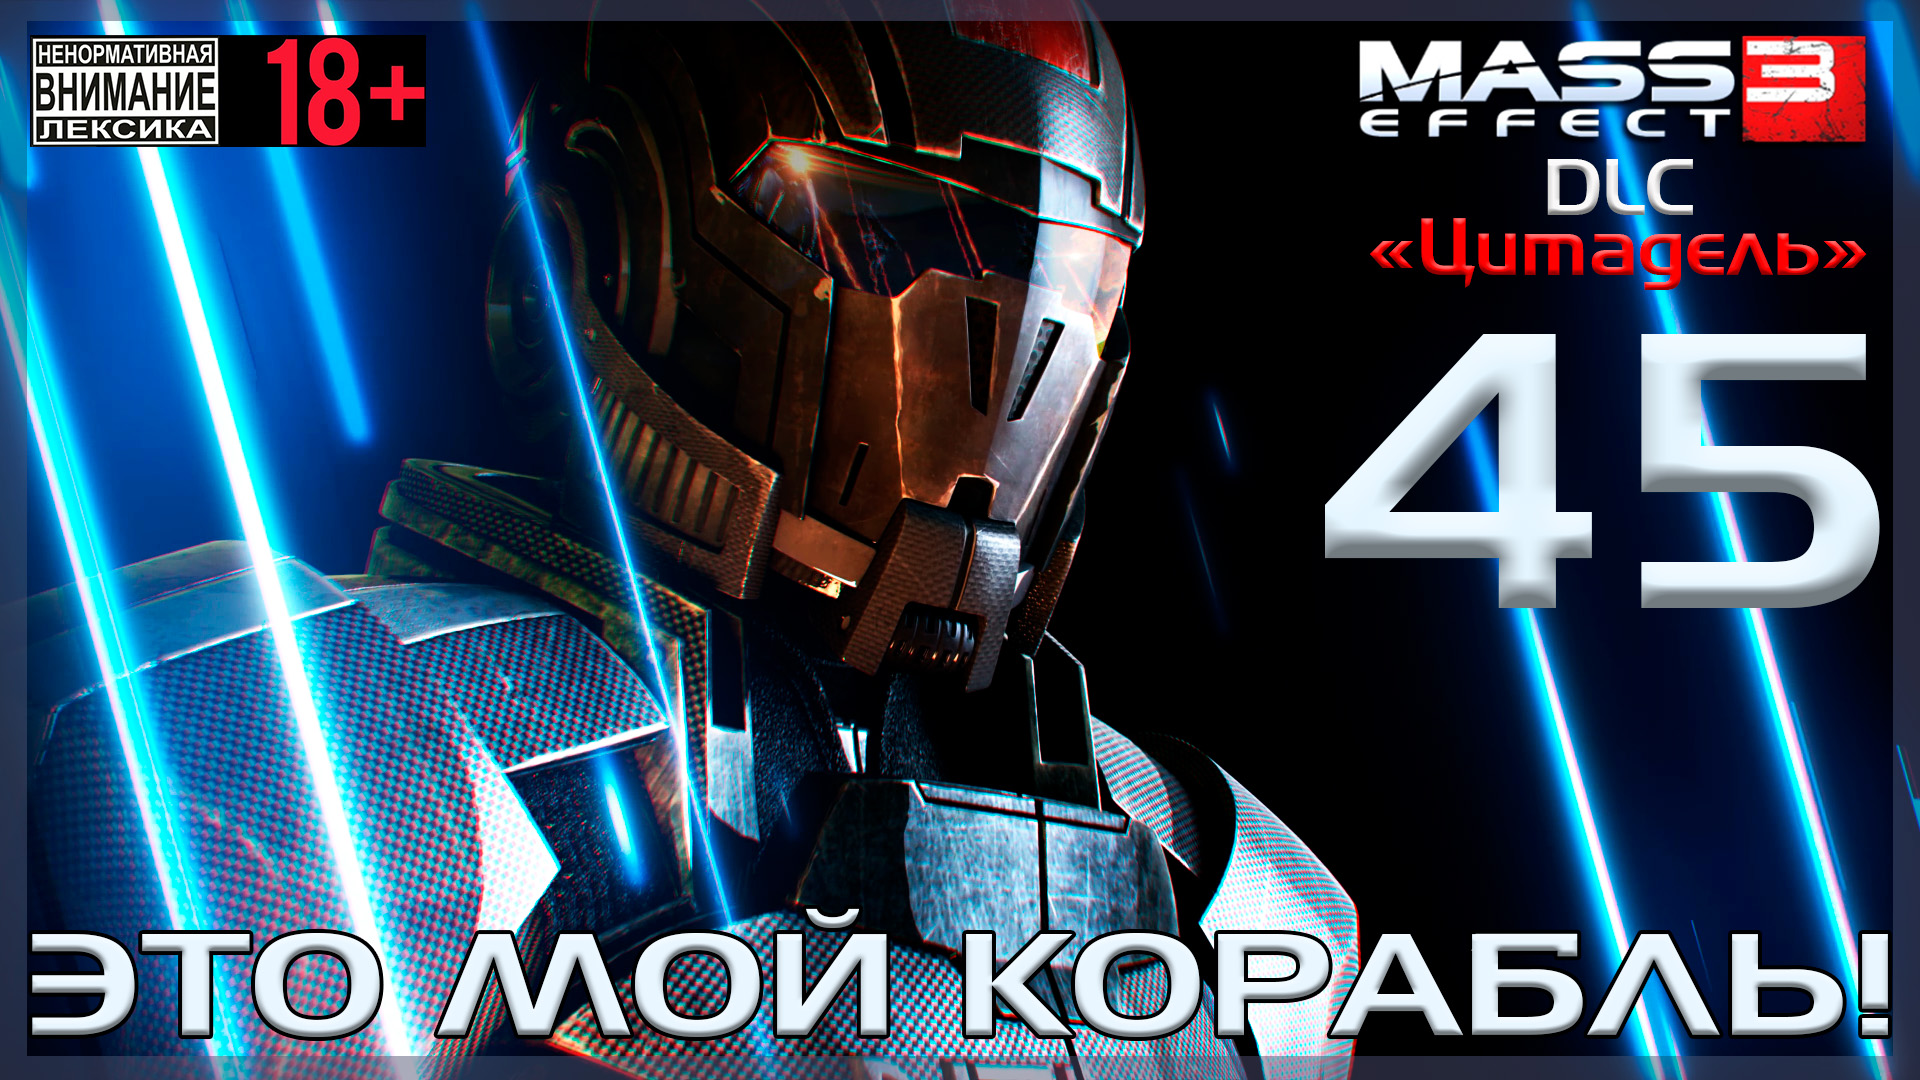 Mass Effect 3 - DLC Цитадель / Original #45 Это мой корабль!